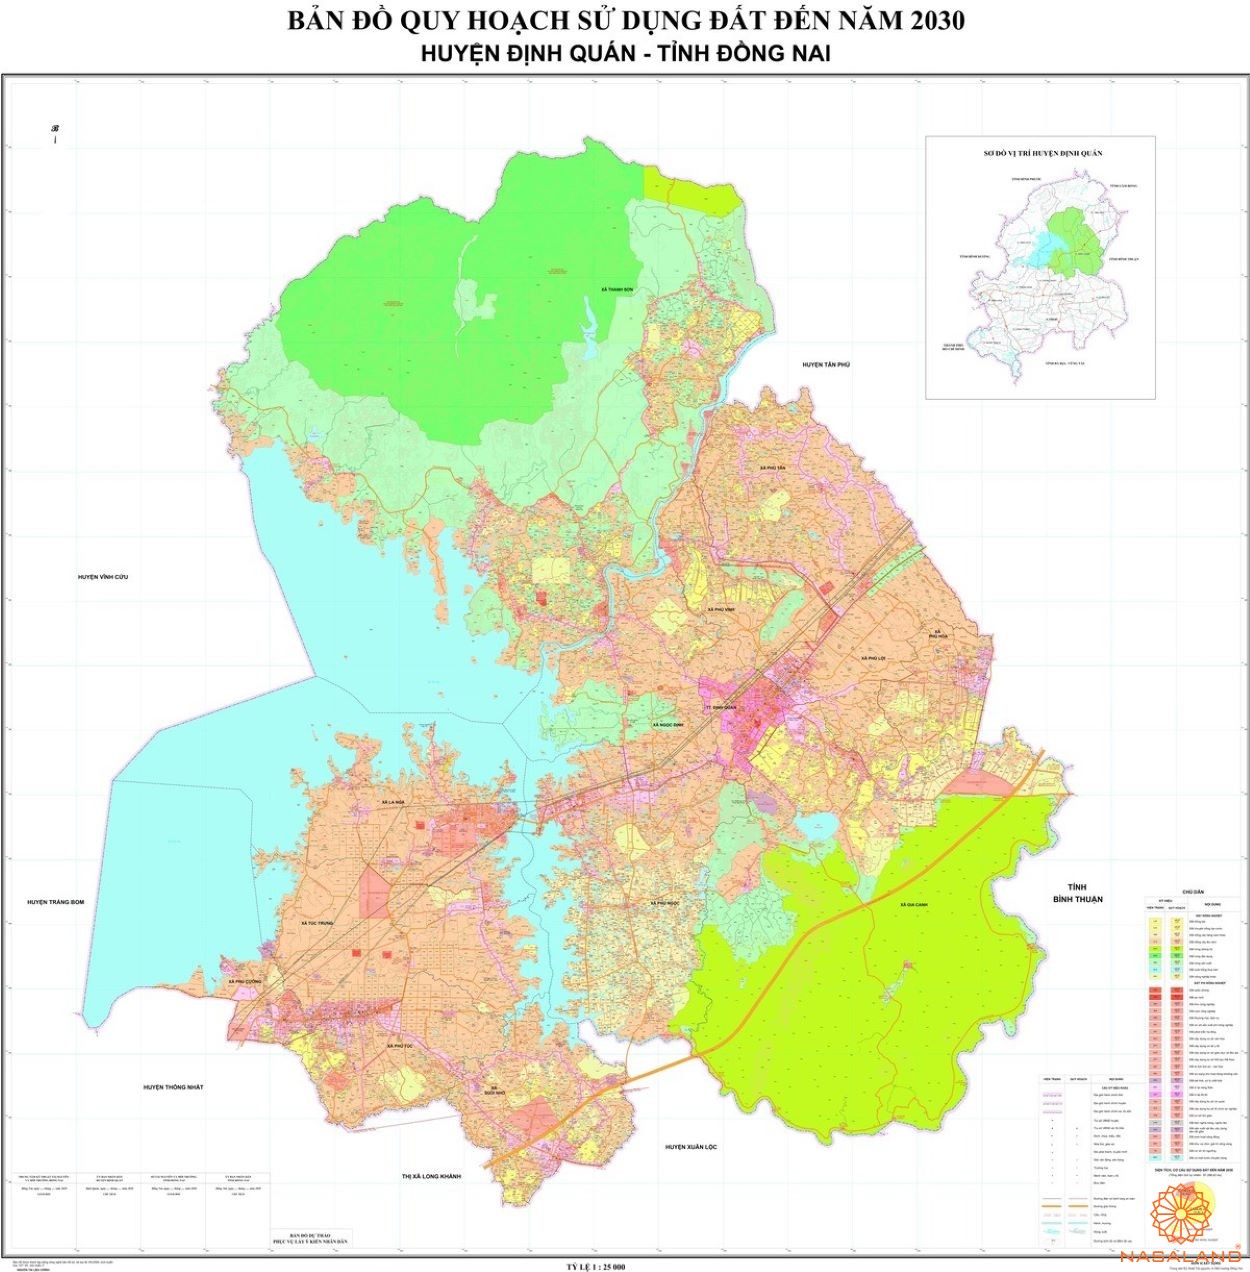 Quy hoạch Huyện Định Quán trên bản đồ quy hoạch phân khu tỷ lệ 1/2000 của Tỉnh Đồng Nai